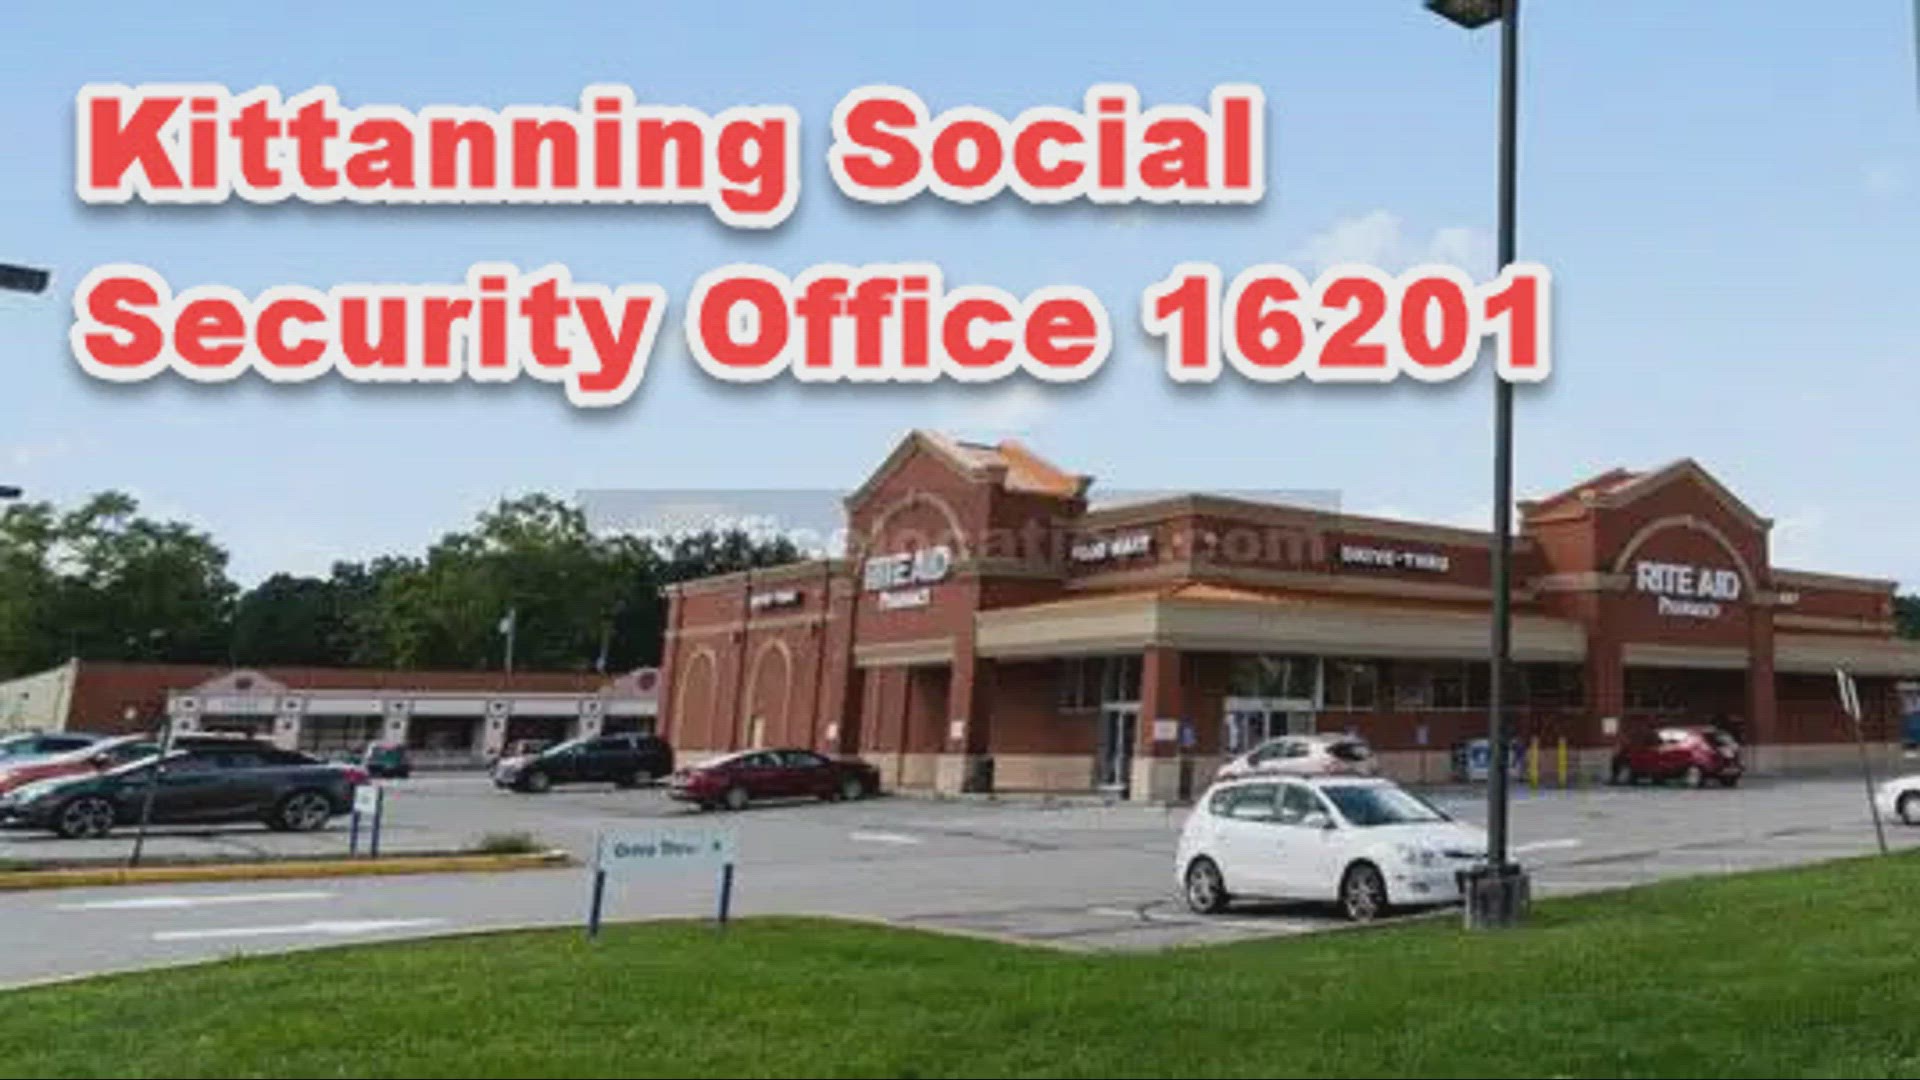 Kittanning, PA, 16201, Social Office | ssofficelocation.com